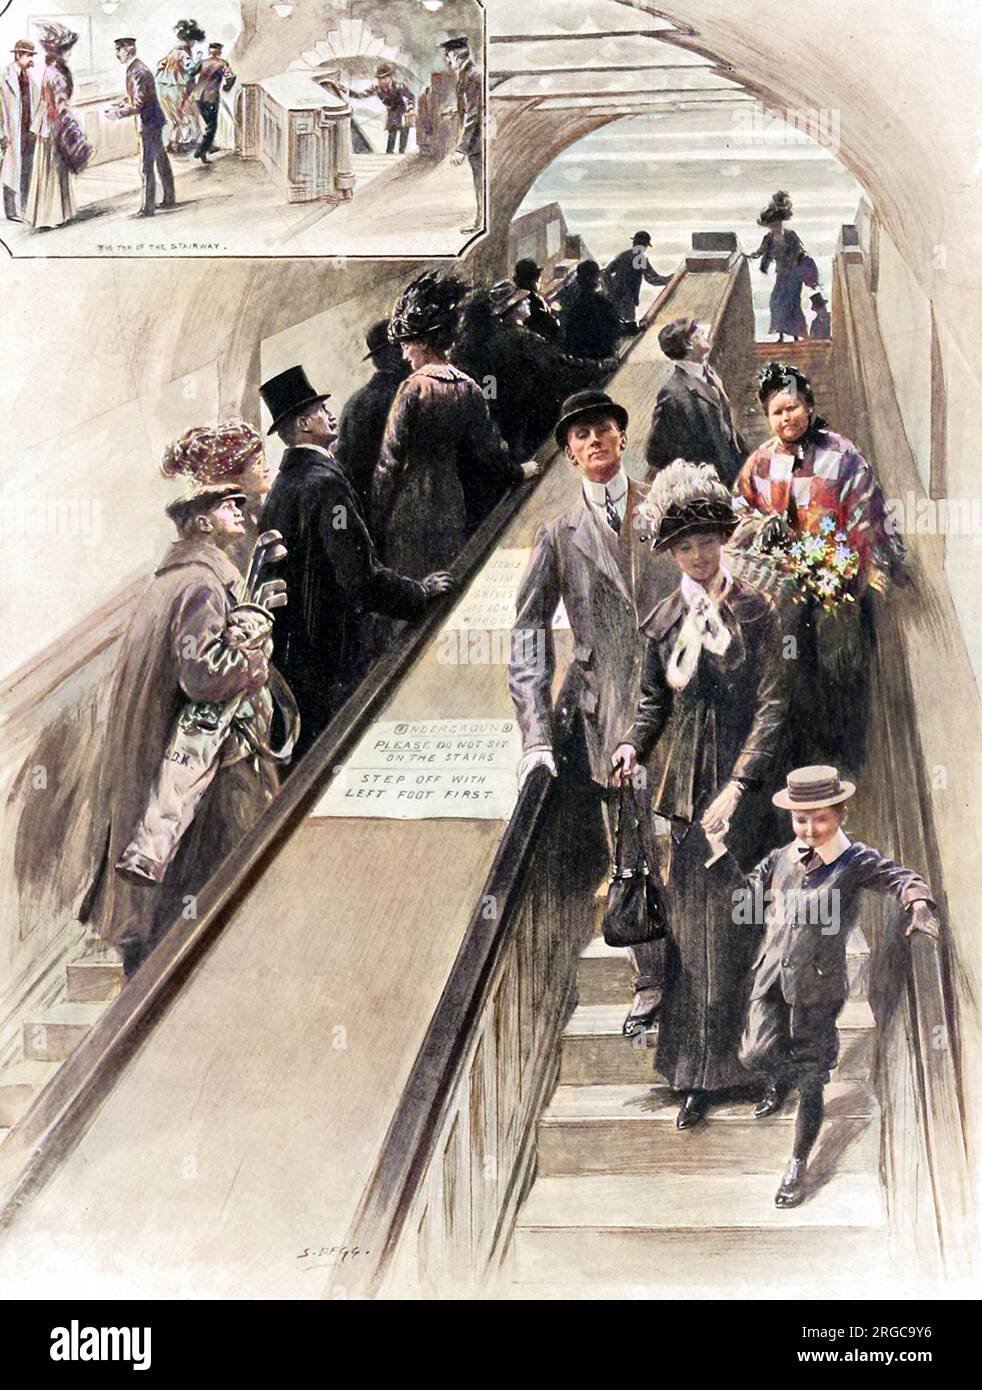 Die ersten Rolltreppen, die jemals in der U-Bahn installiert wurden, zwischen dem District und den Piccadilly-Bahnhöfen am Bahnhof Earls Court. Zu der Zeit wurde den Passagieren, die sie benutzten, eine tolle Unterhaltung geboten. Stockfoto